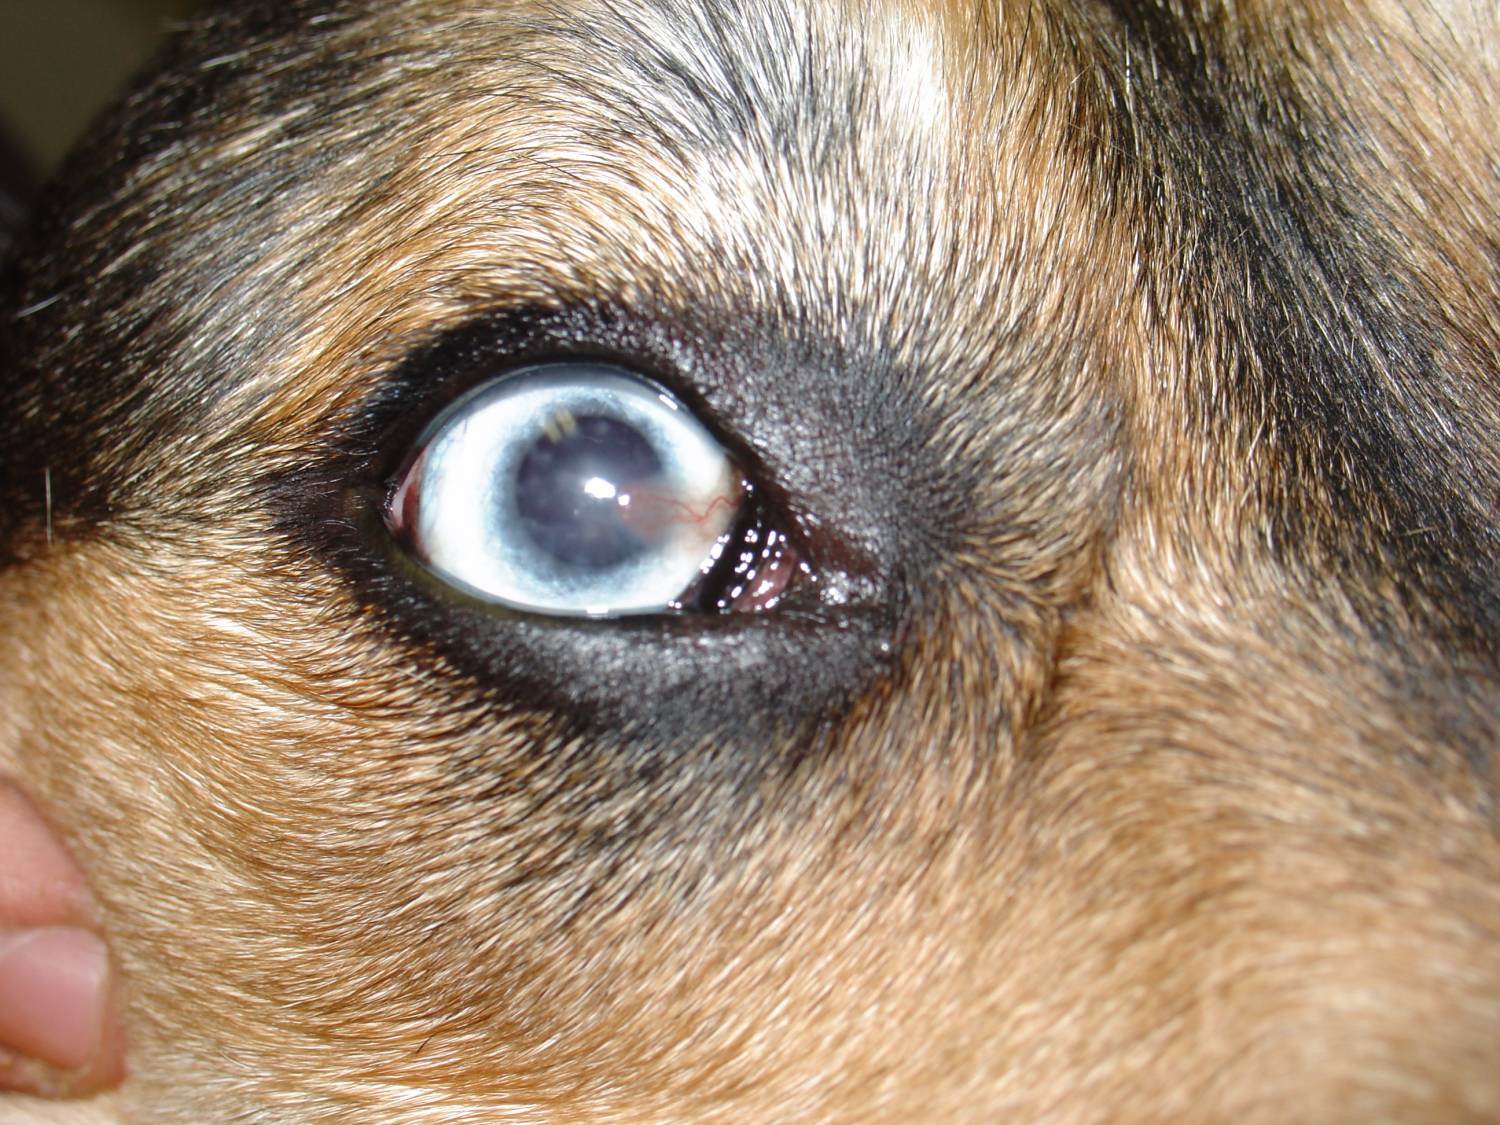 Заболевания роговицы глаза:  разновидности, симптомы, лечение